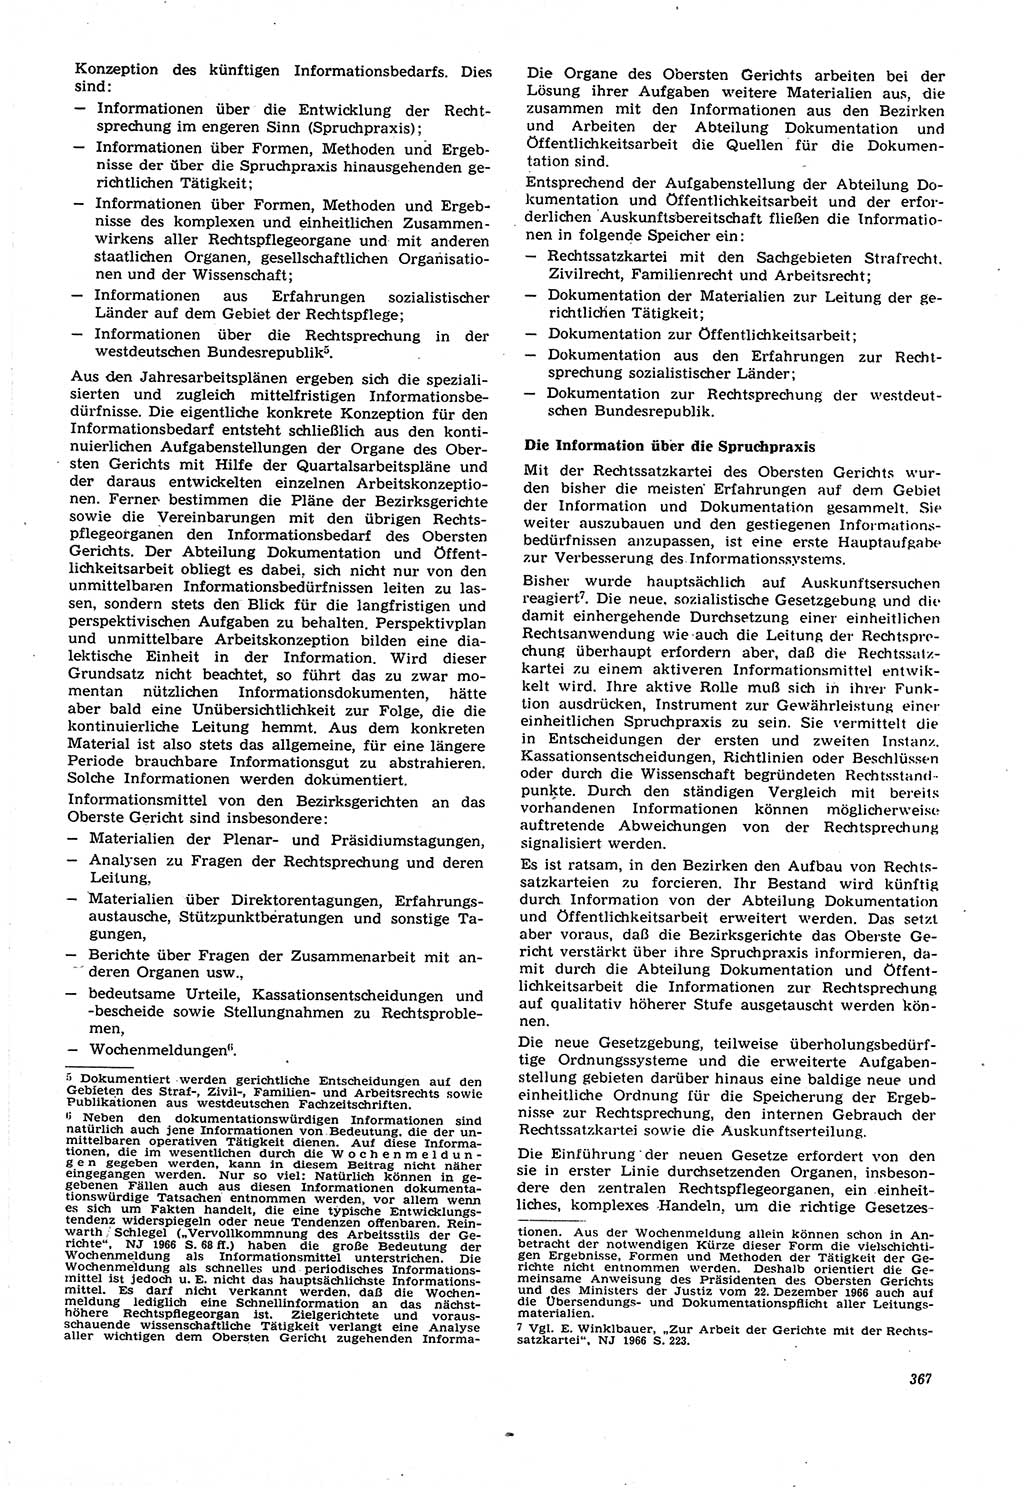 Neue Justiz (NJ), Zeitschrift für Recht und Rechtswissenschaft [Deutsche Demokratische Republik (DDR)], 21. Jahrgang 1967, Seite 367 (NJ DDR 1967, S. 367)